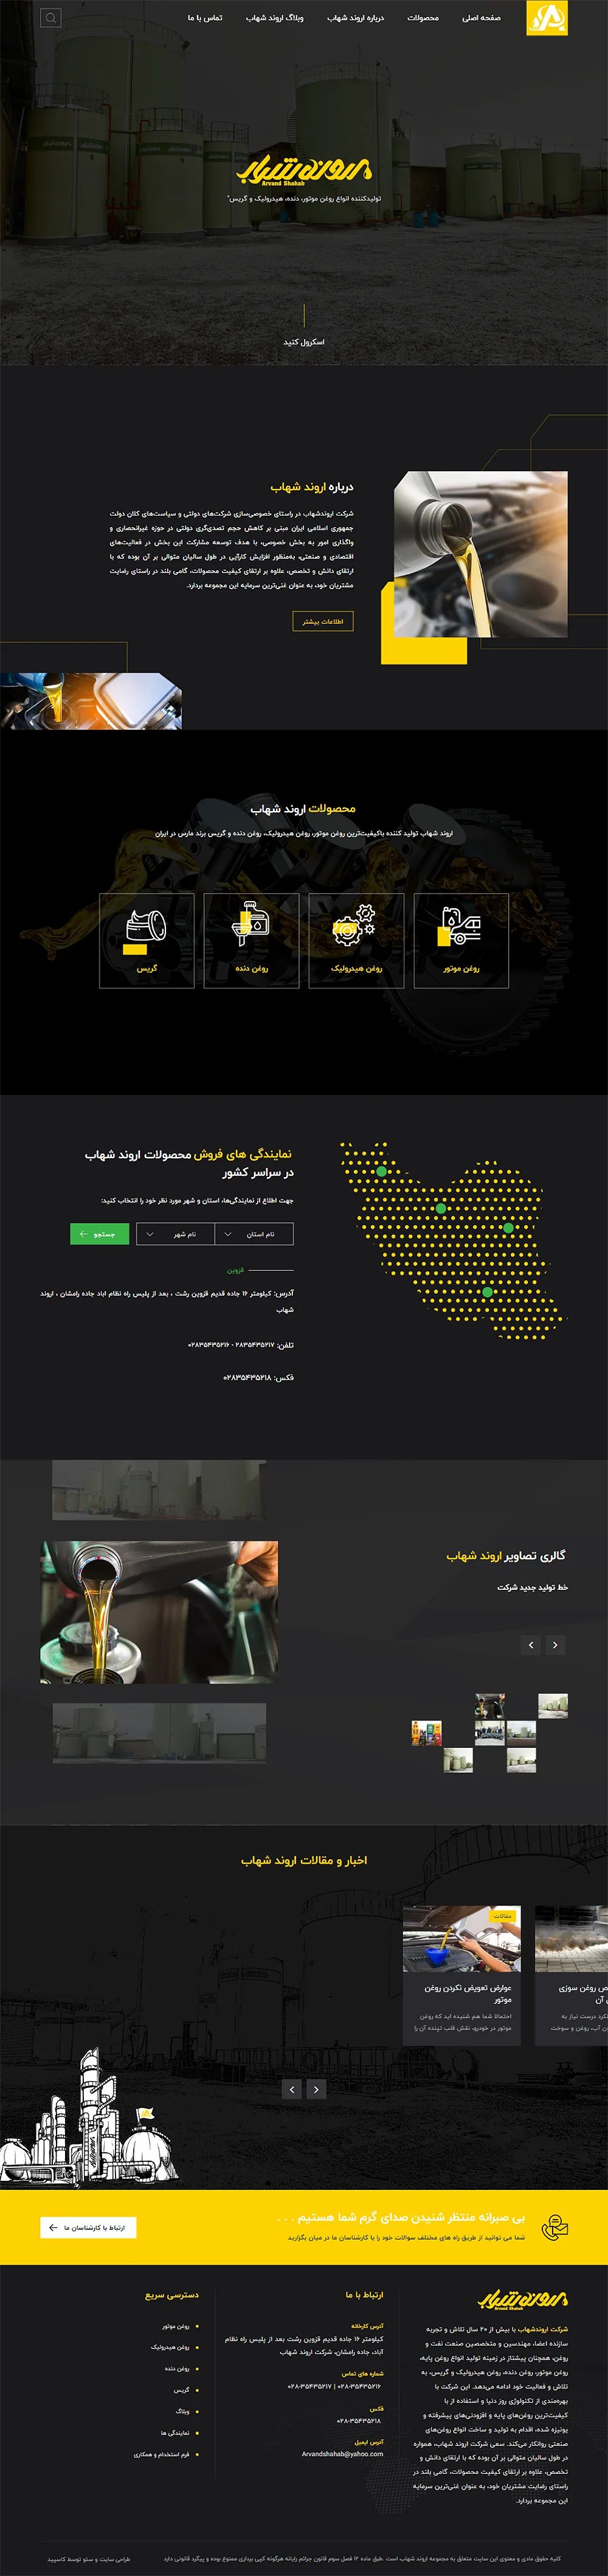 نمونه کار طراحی و بهینه سازی سایت شرکت اروند شهاب